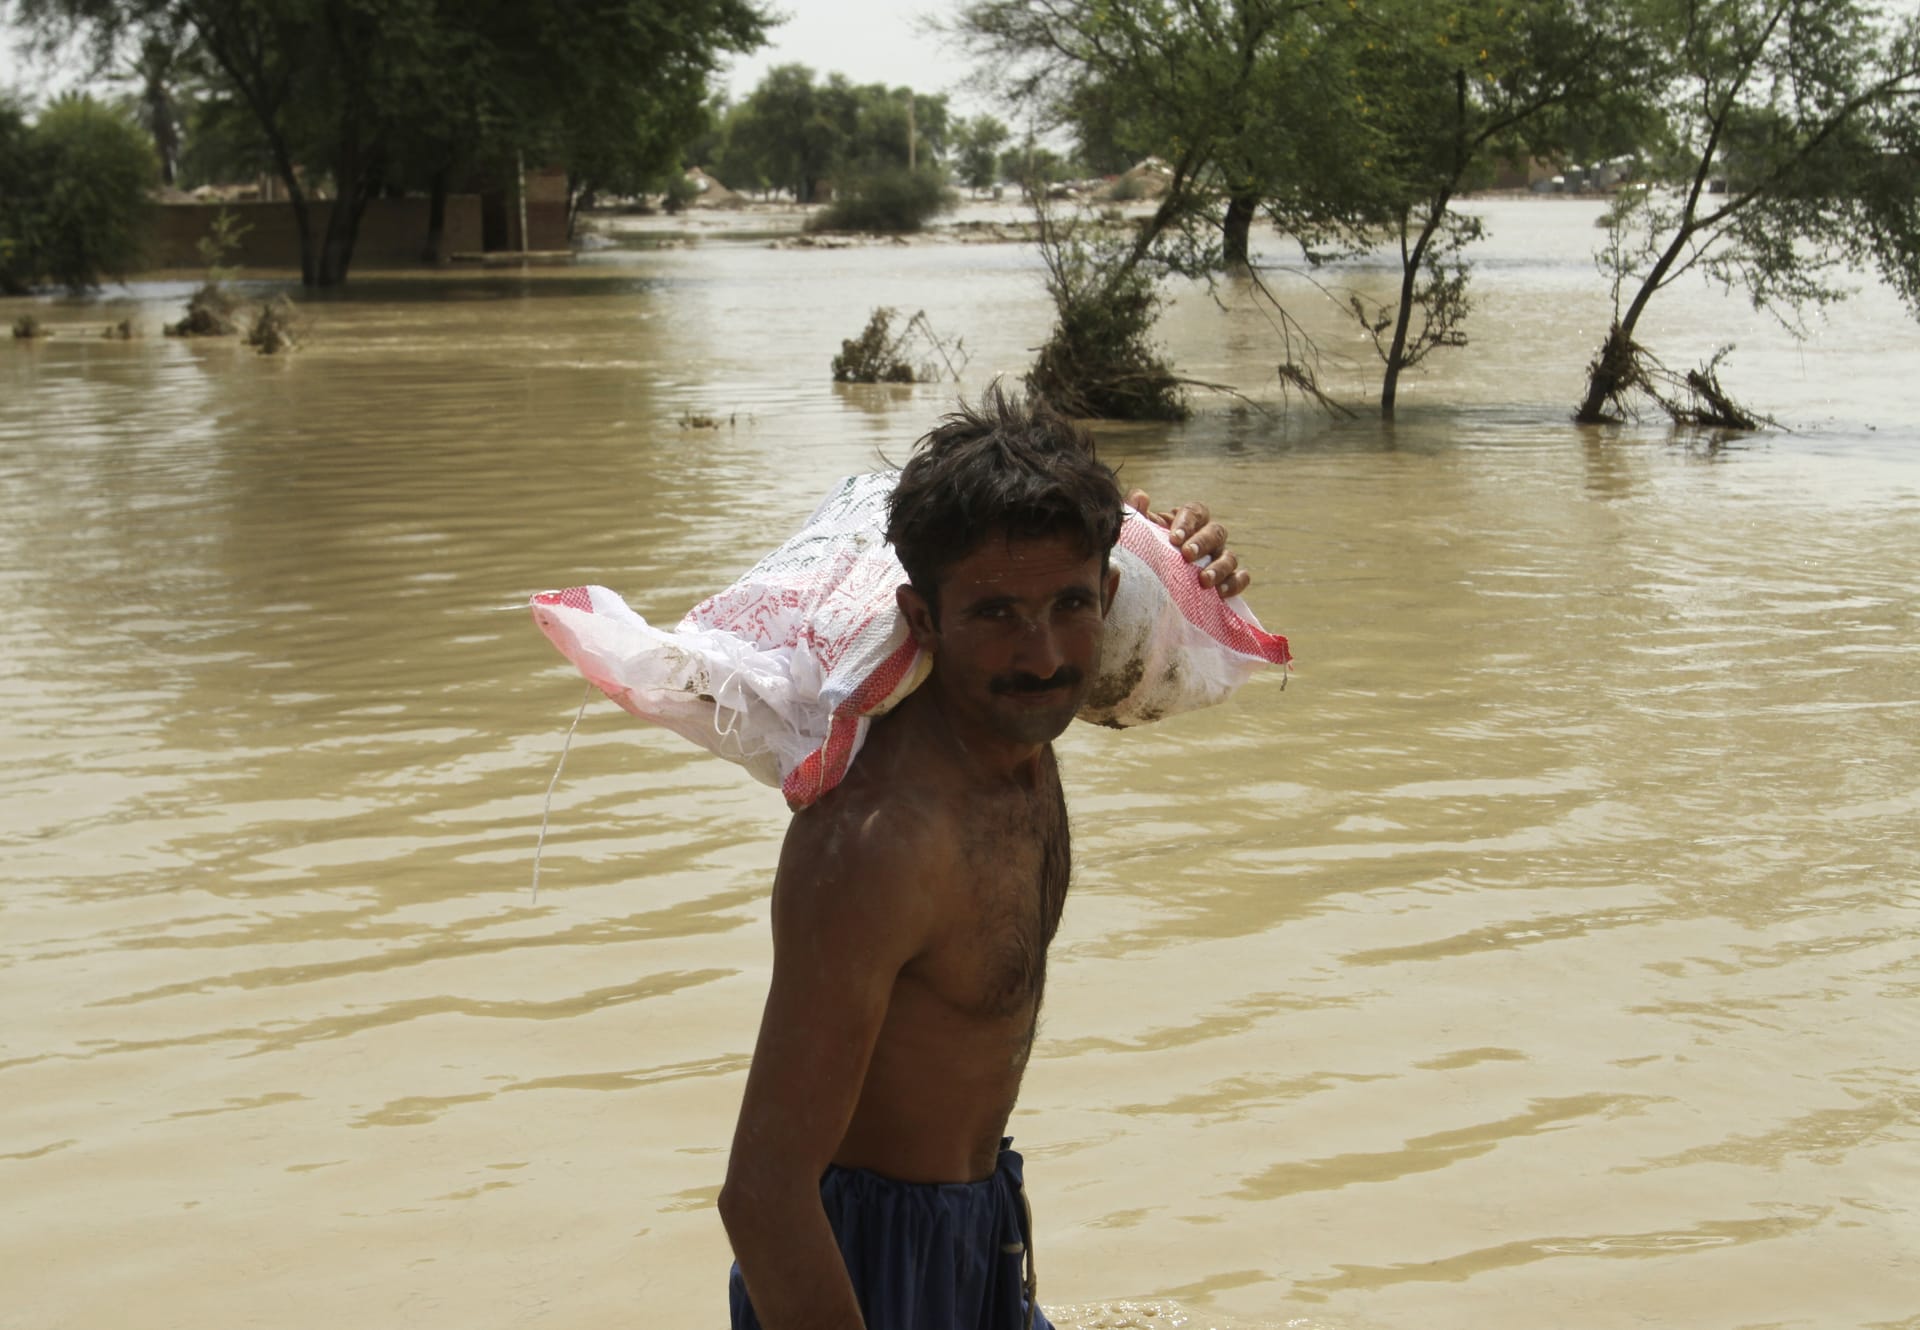 Období monzunových dešťů, které v Pákistánu začalo v červnu, letos přineslo neobvykle silné srážky. 